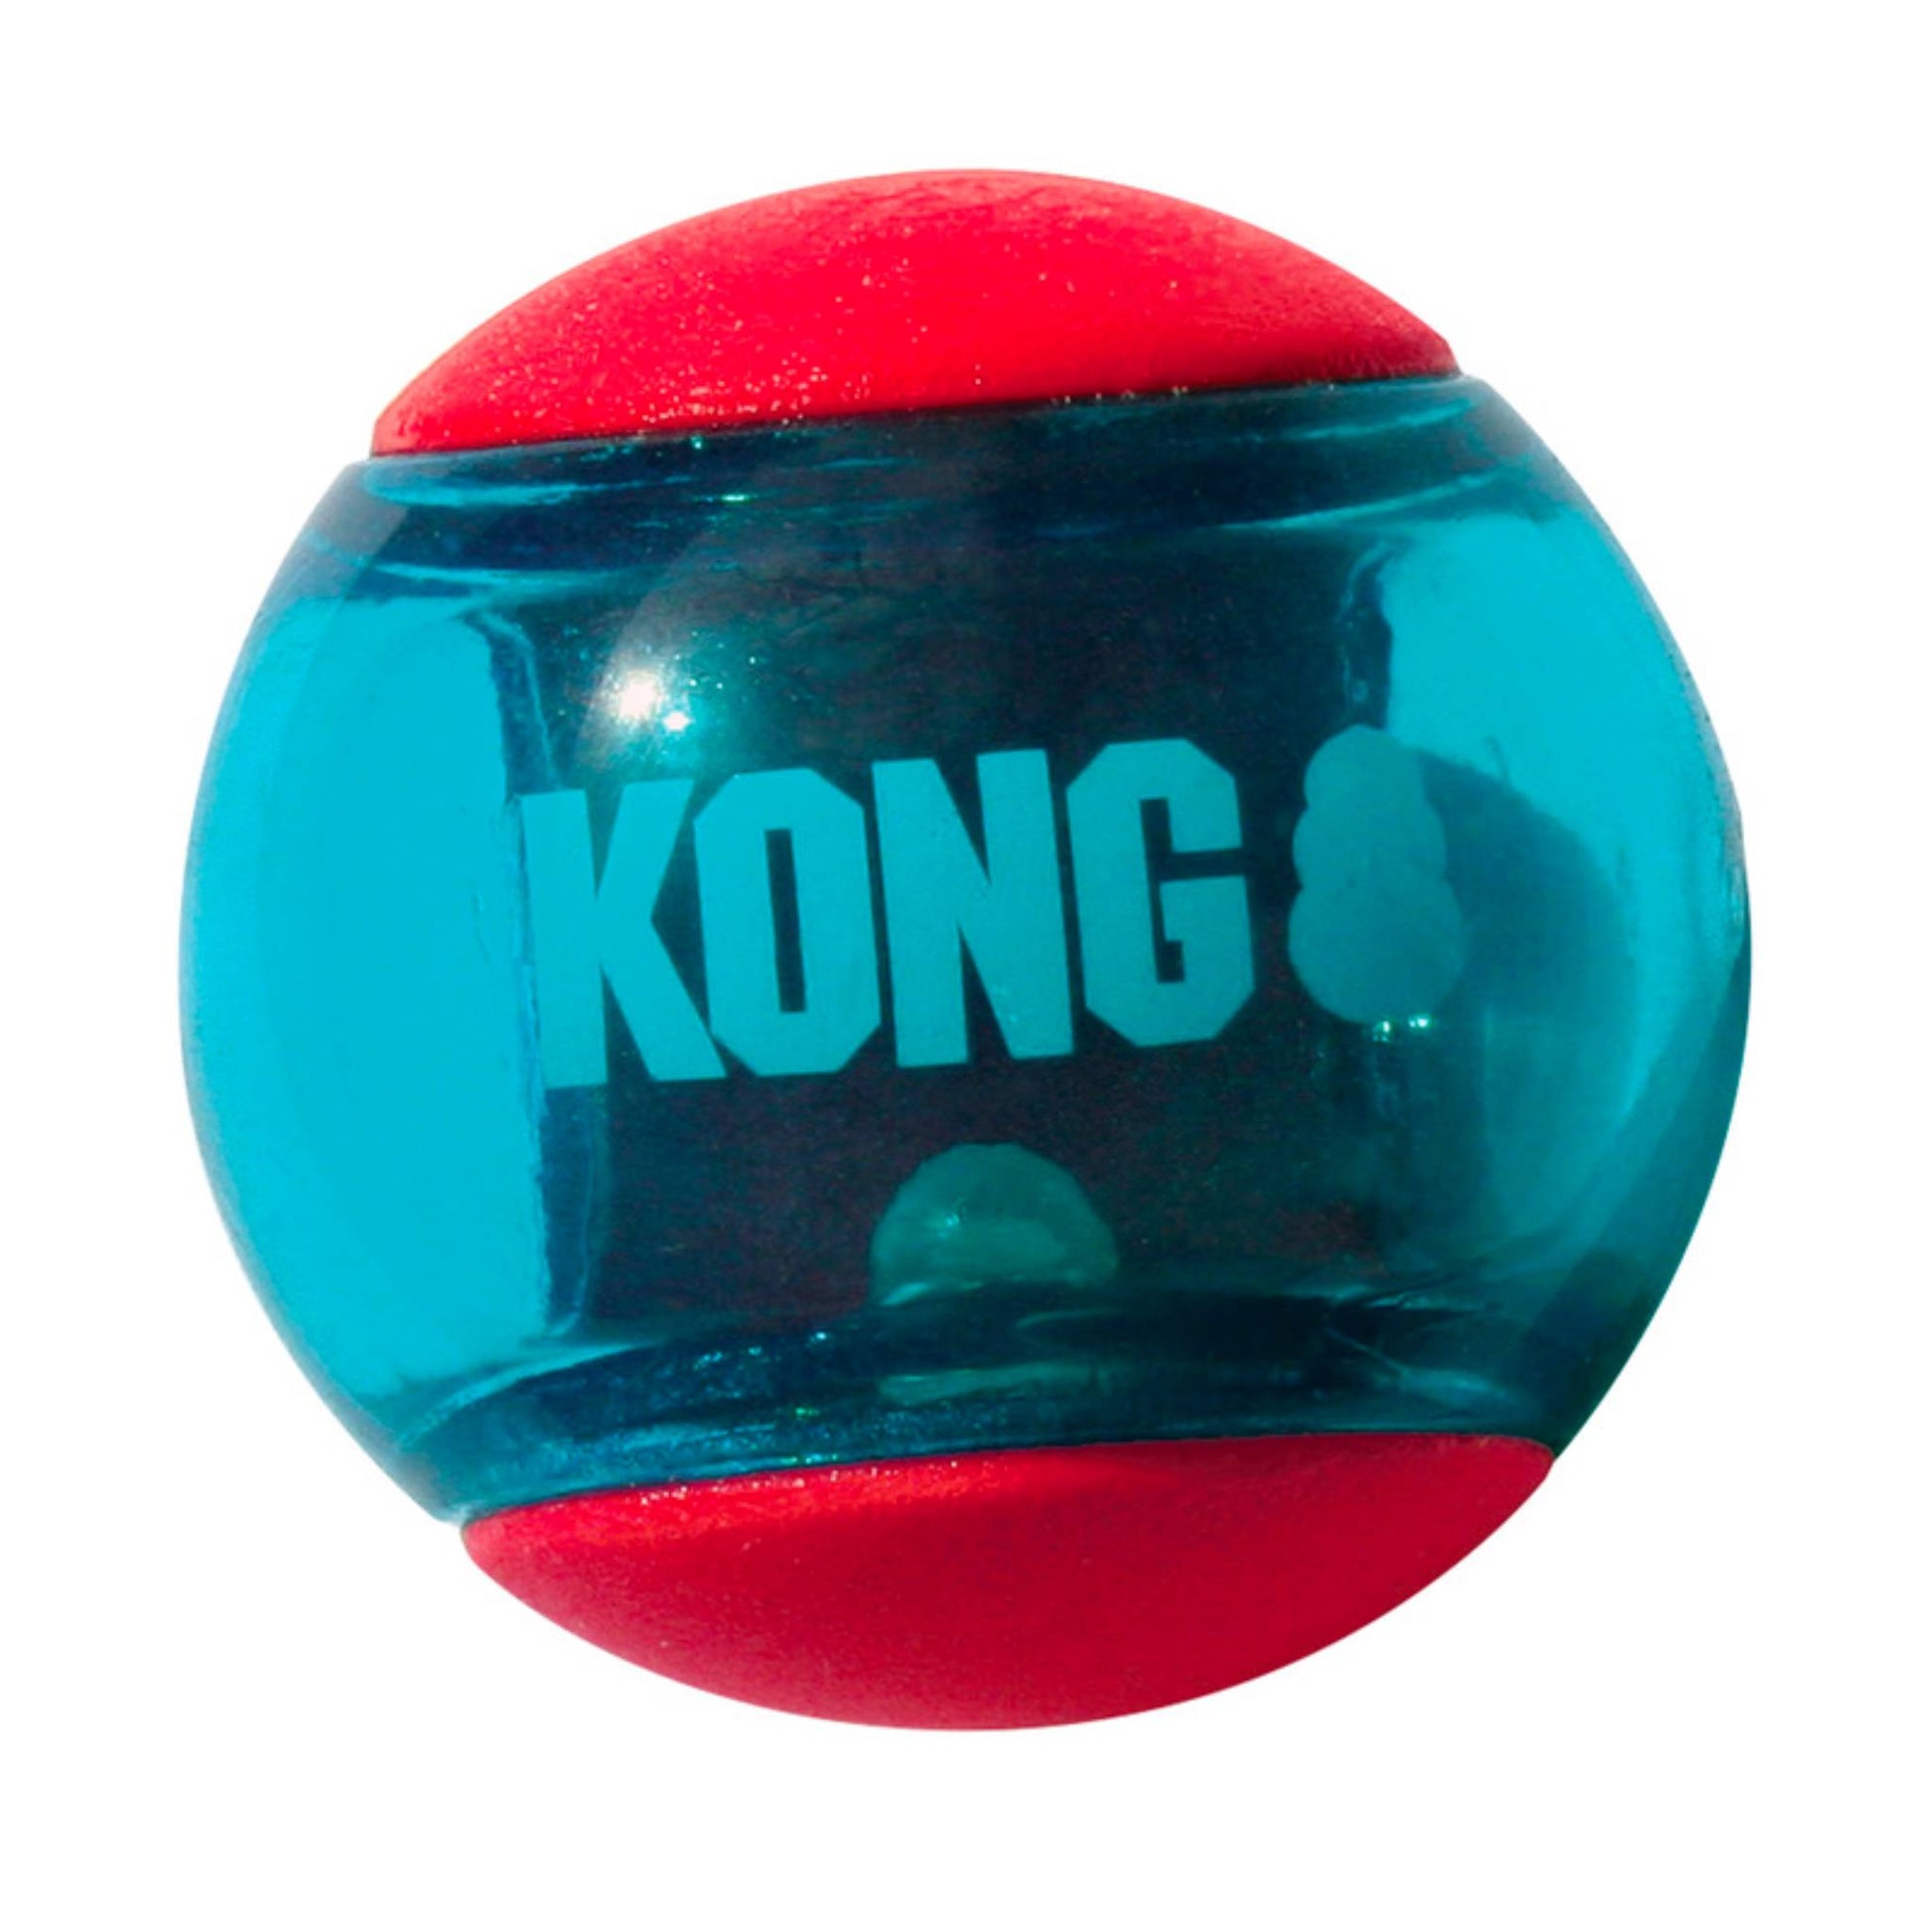 kong squeezz action ball